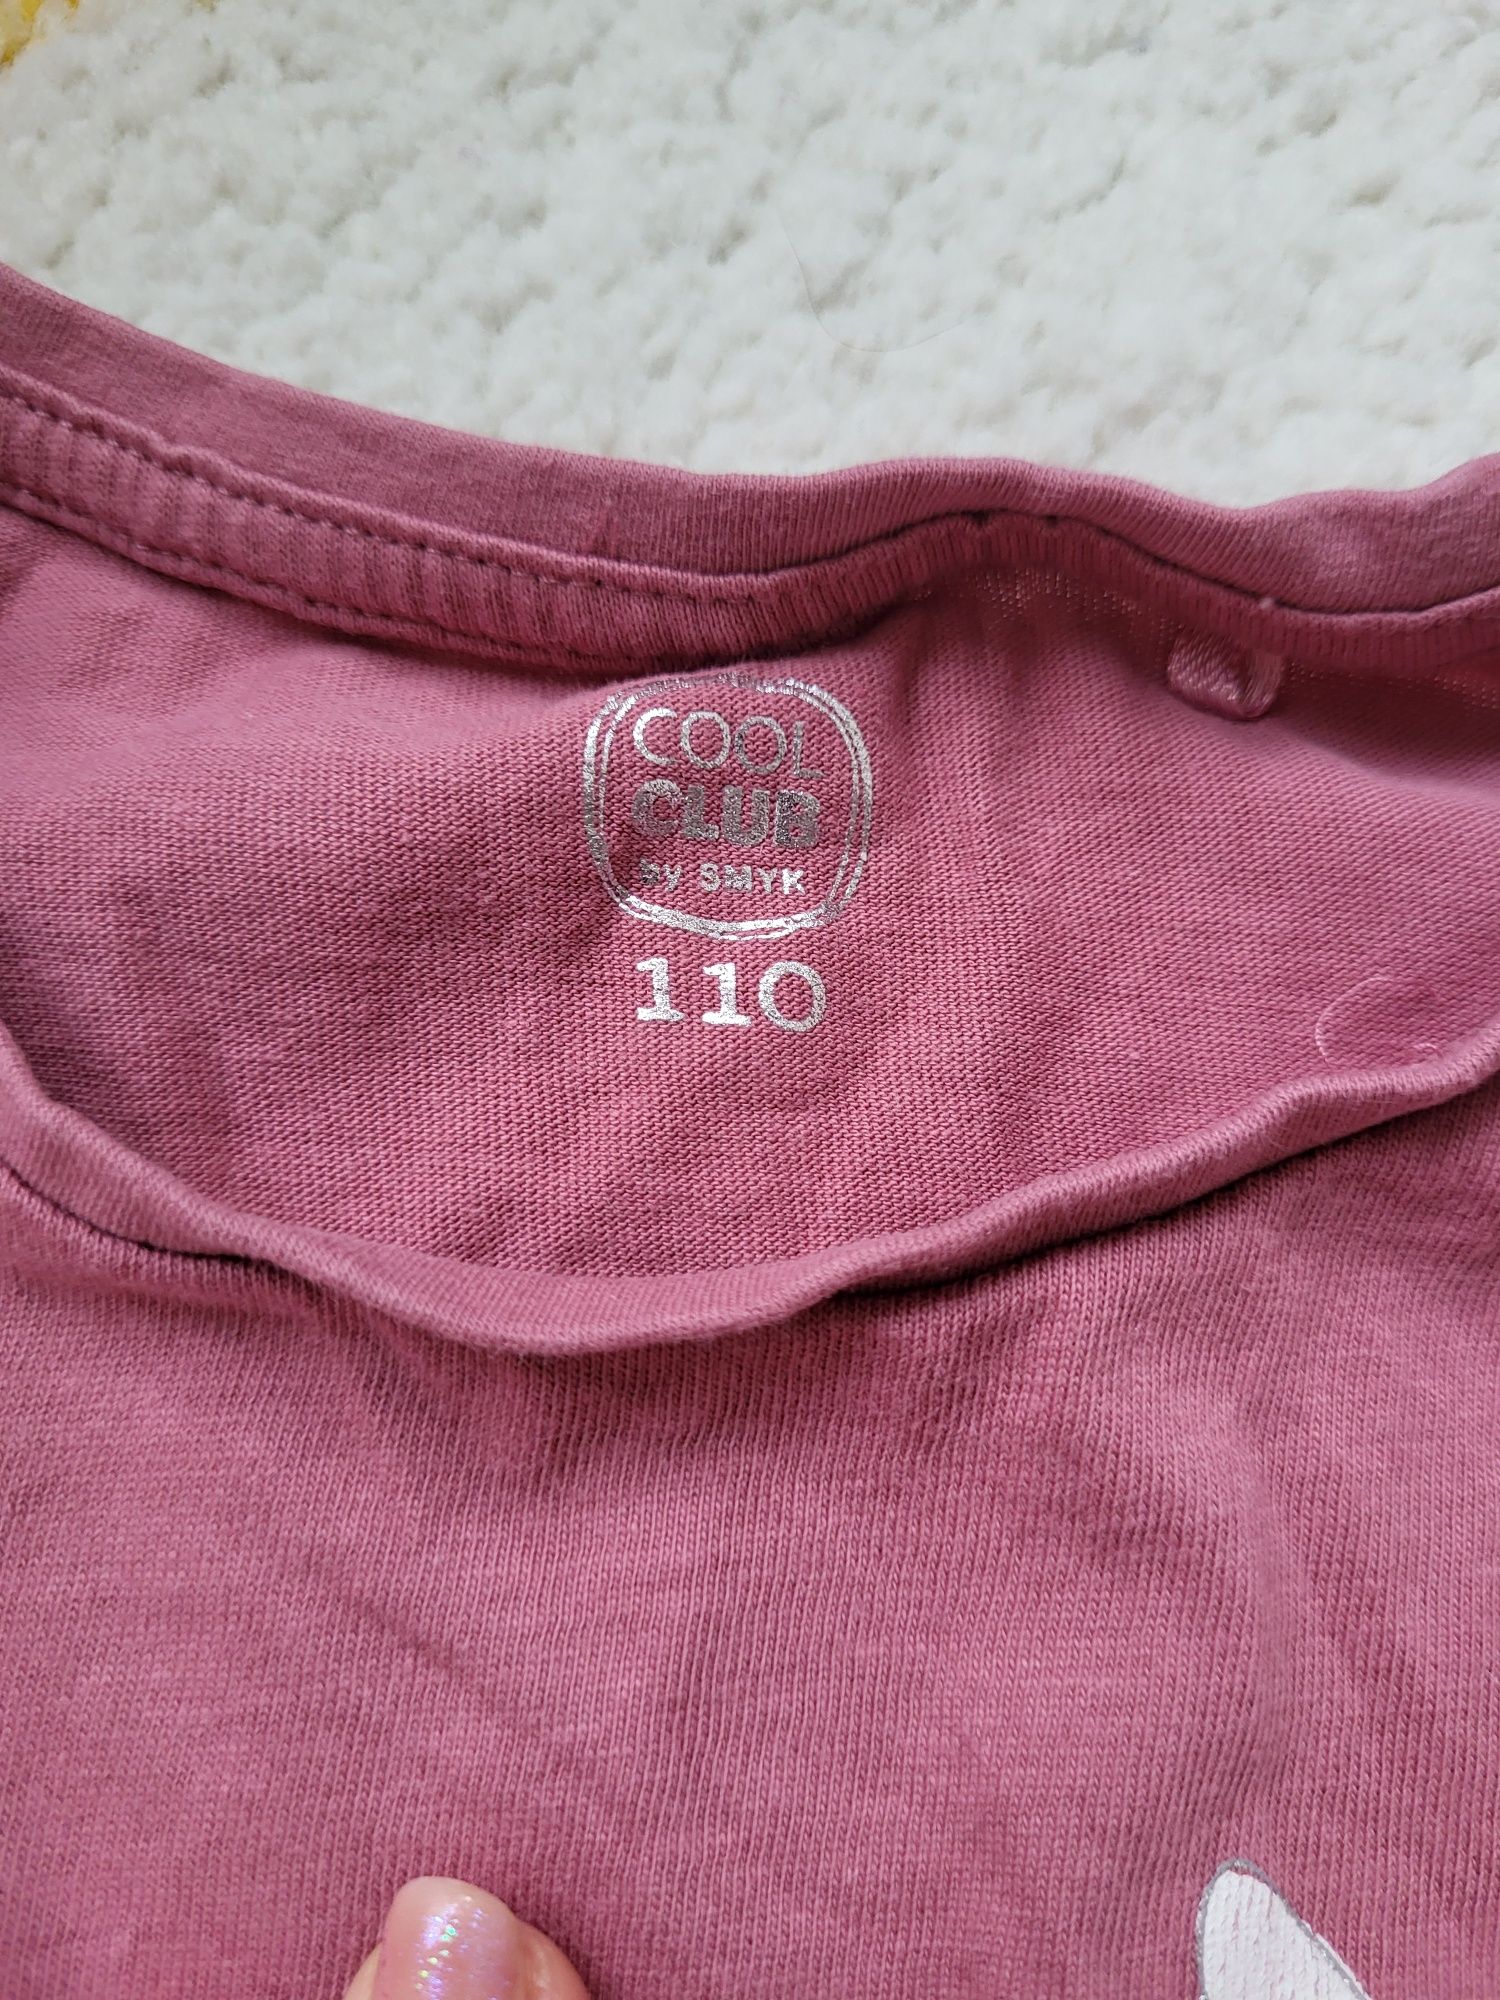 Lot bluze fetița mărimea 110